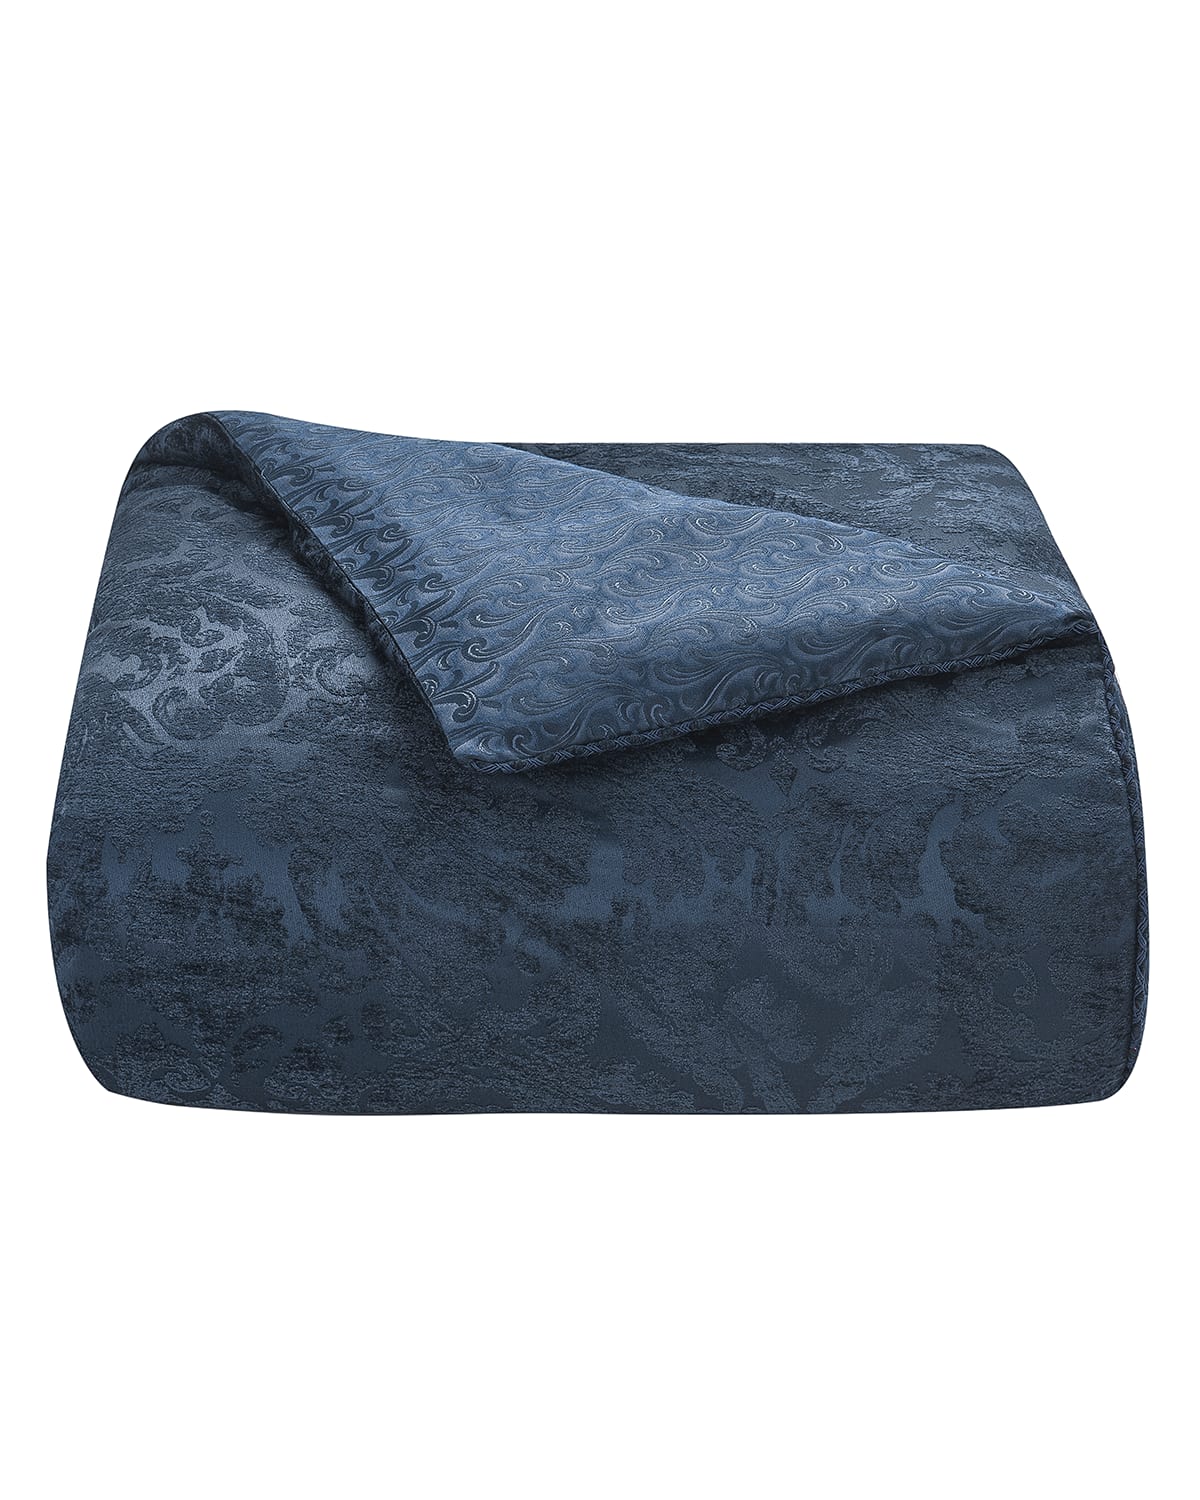 Image Waterford Leighton King Comforter Set